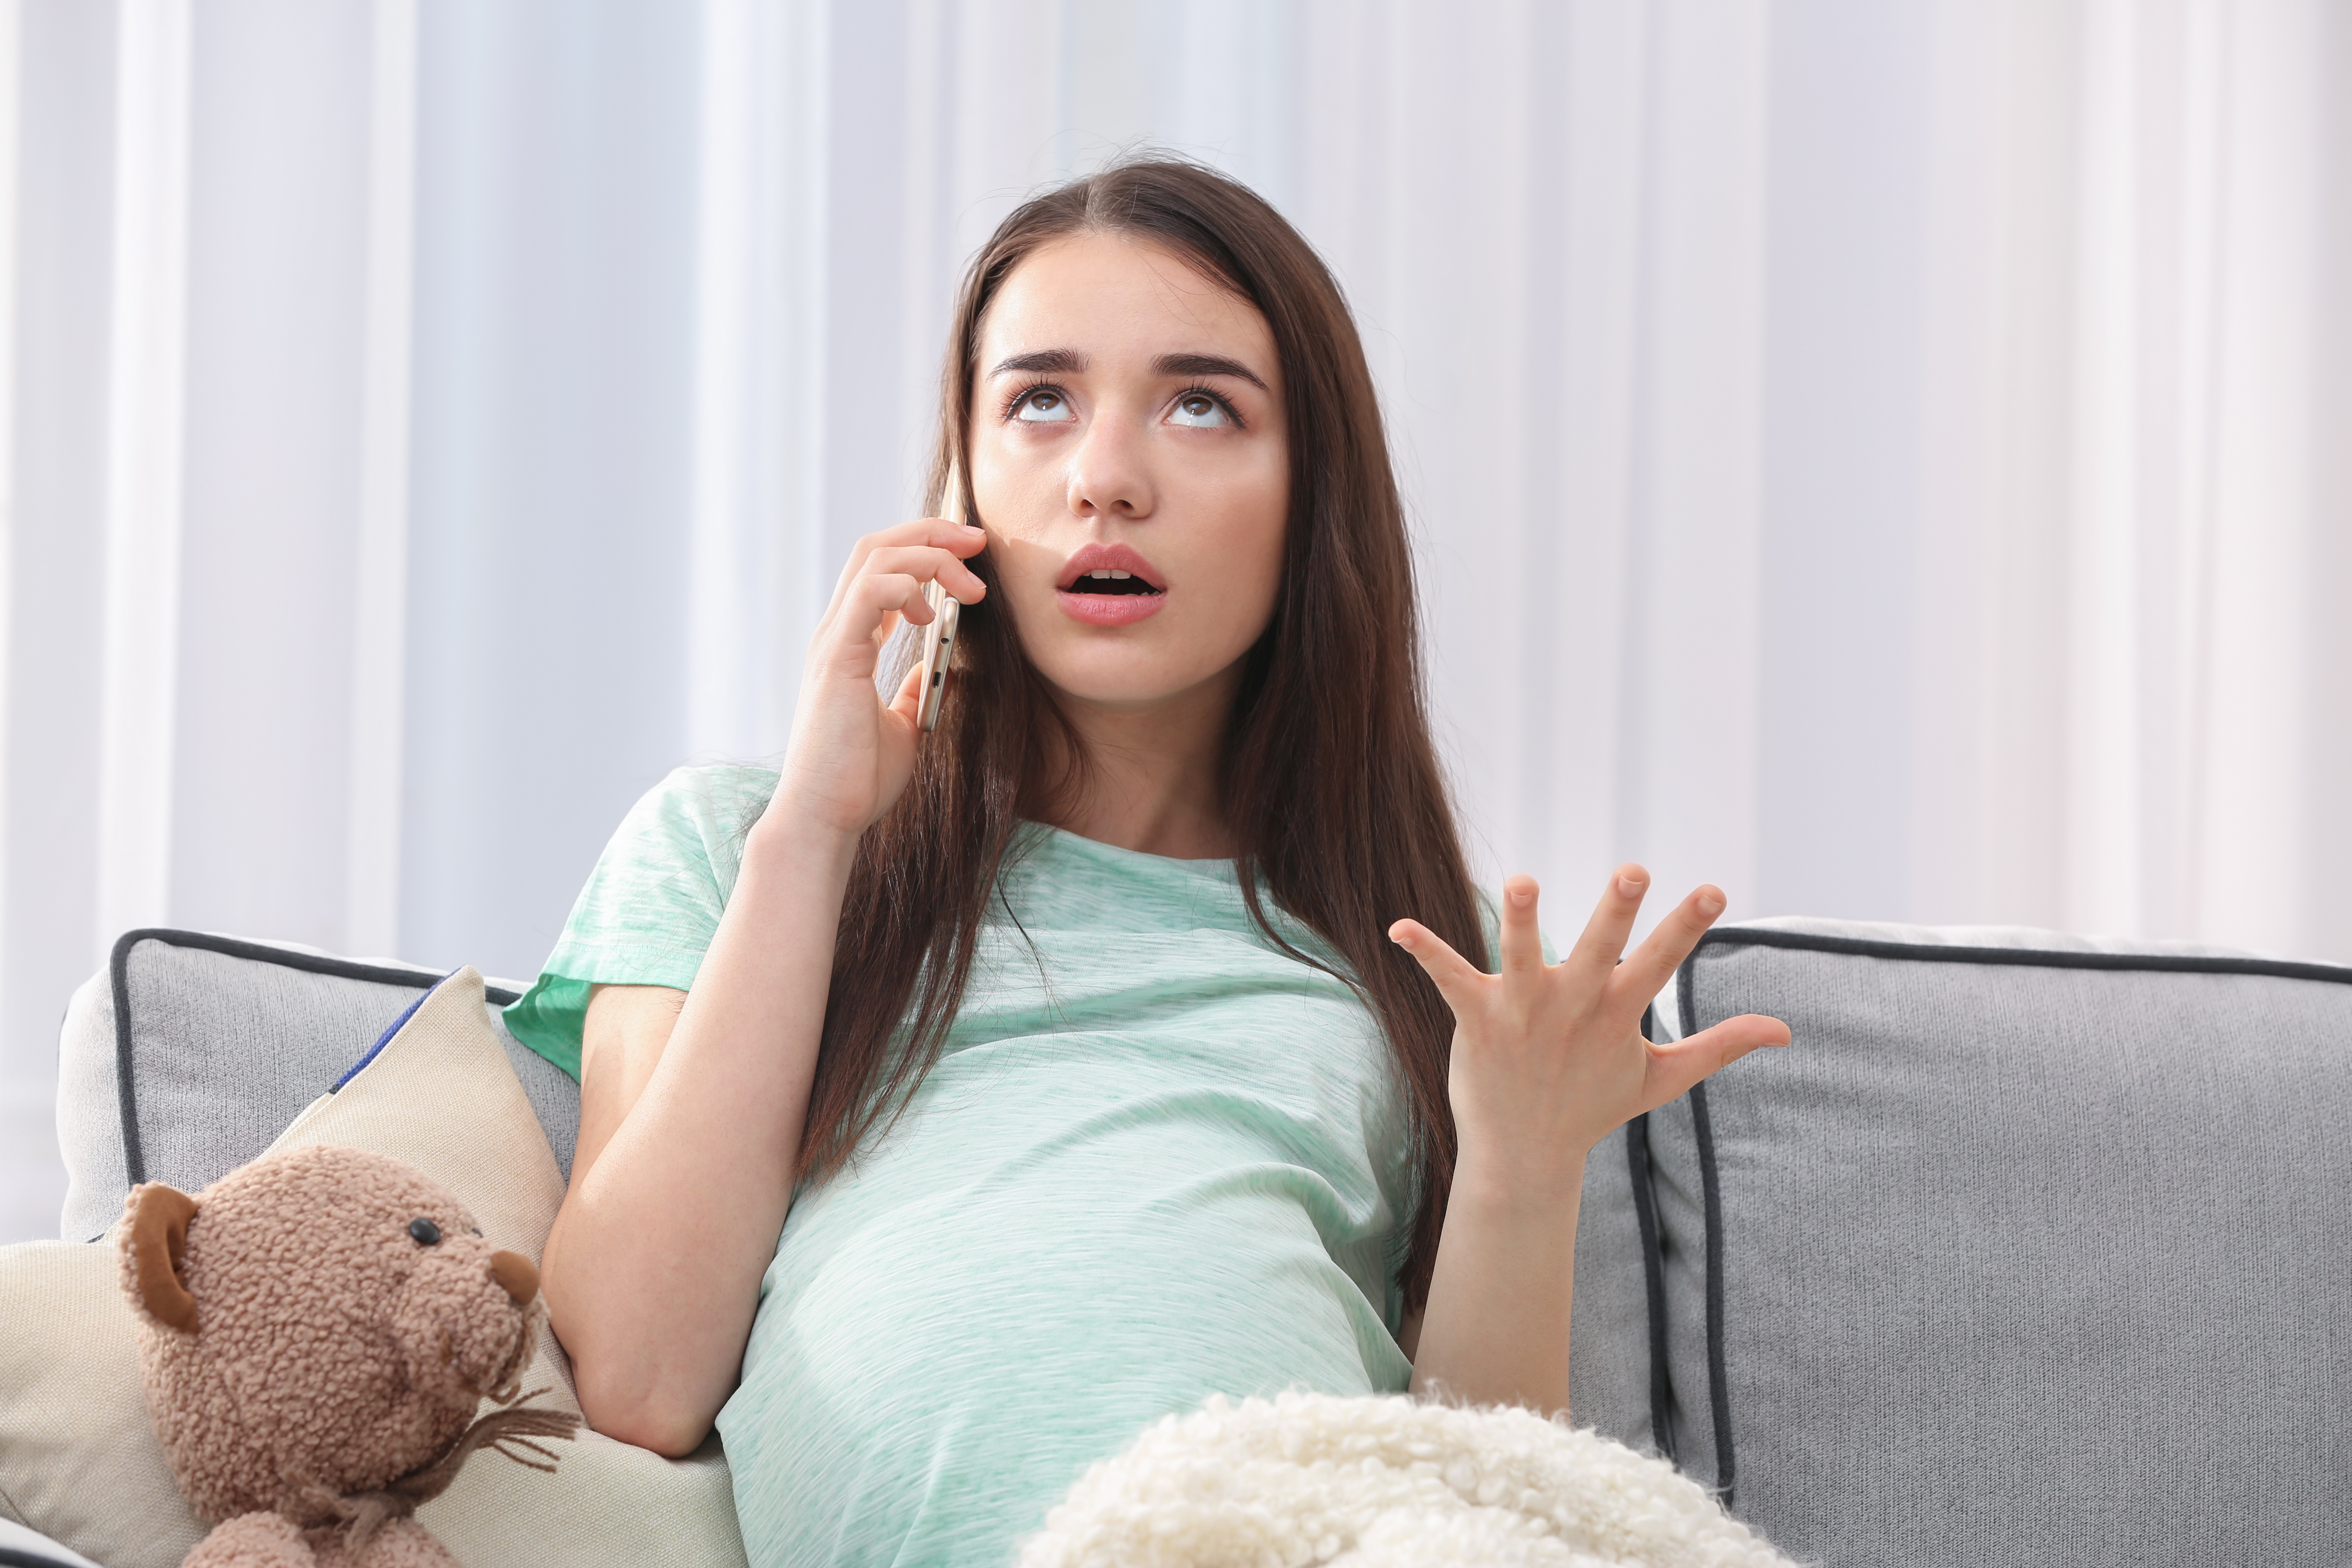 Une femme enceinte qui parle au téléphone | Source : Shutterstock